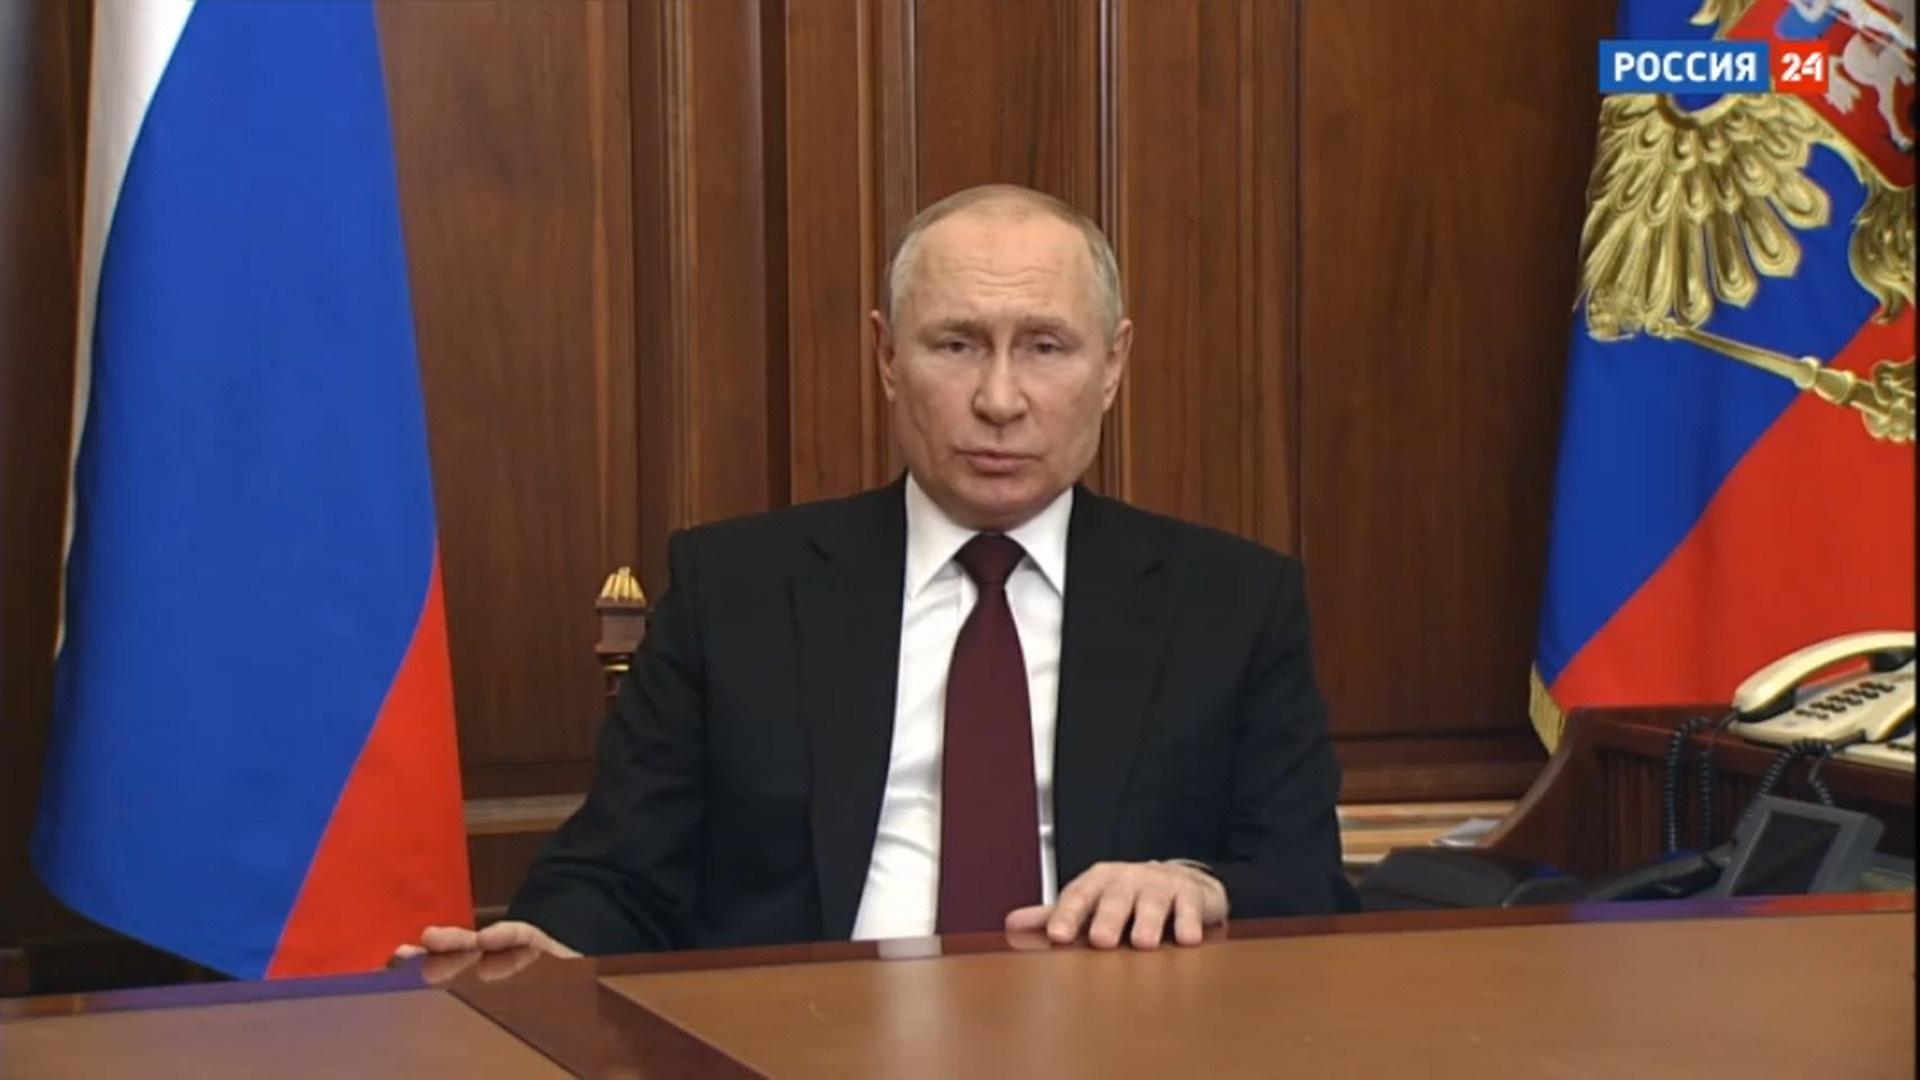 Обращение Путина к гражданам России транслировали в прямом эфире американские телеканалы